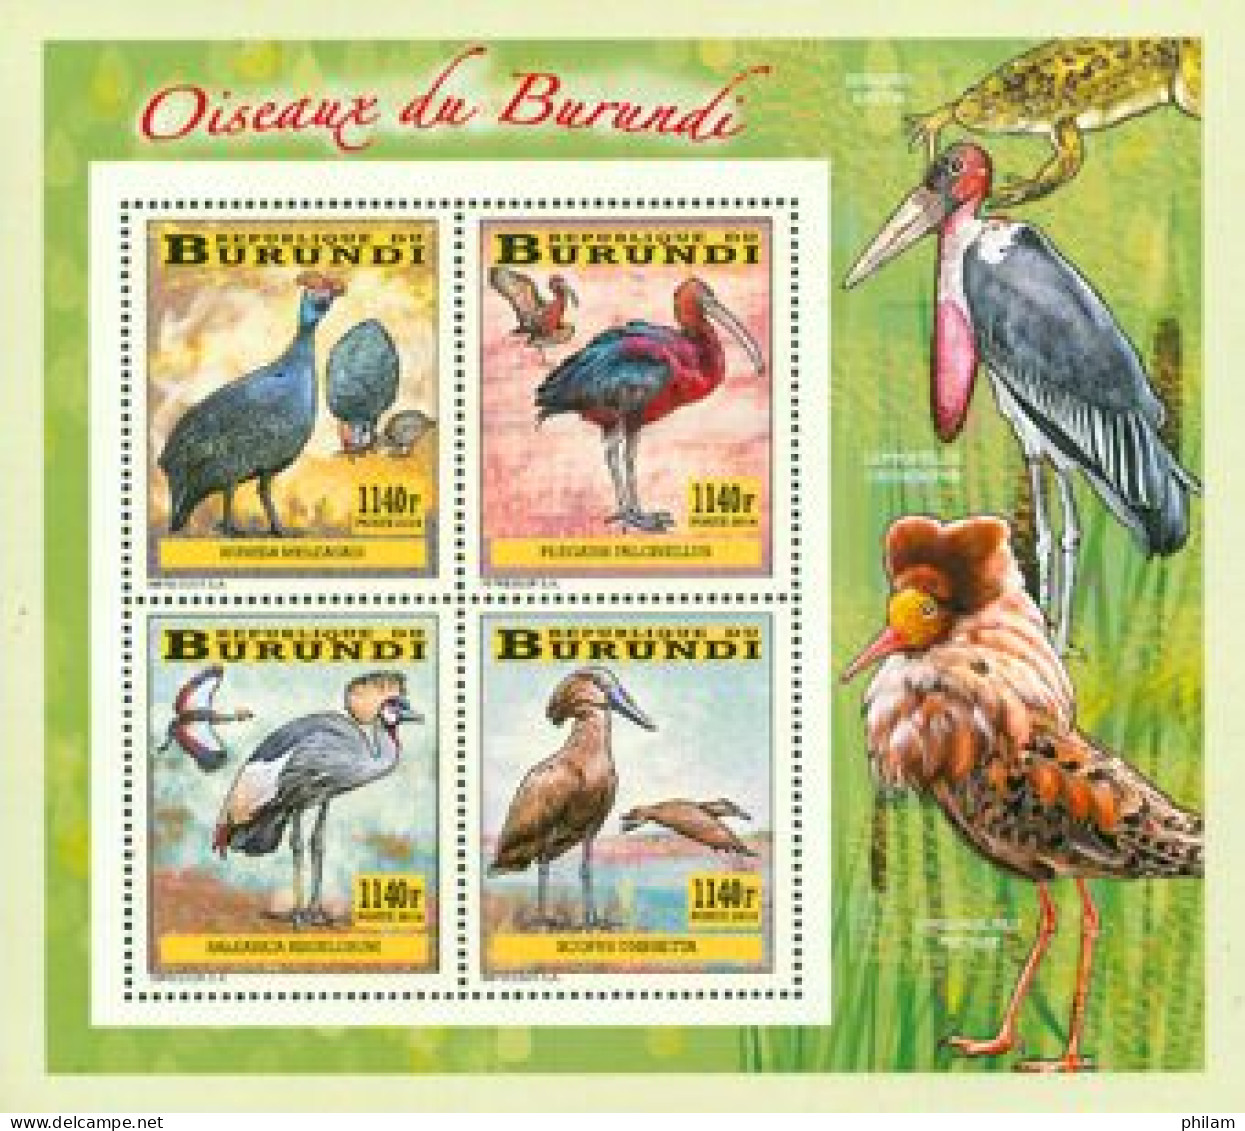 Burundi 2014 - Les Oiseaux Du Burundi - Echassiers - Bloc Collectif - Cigognes & échassiers